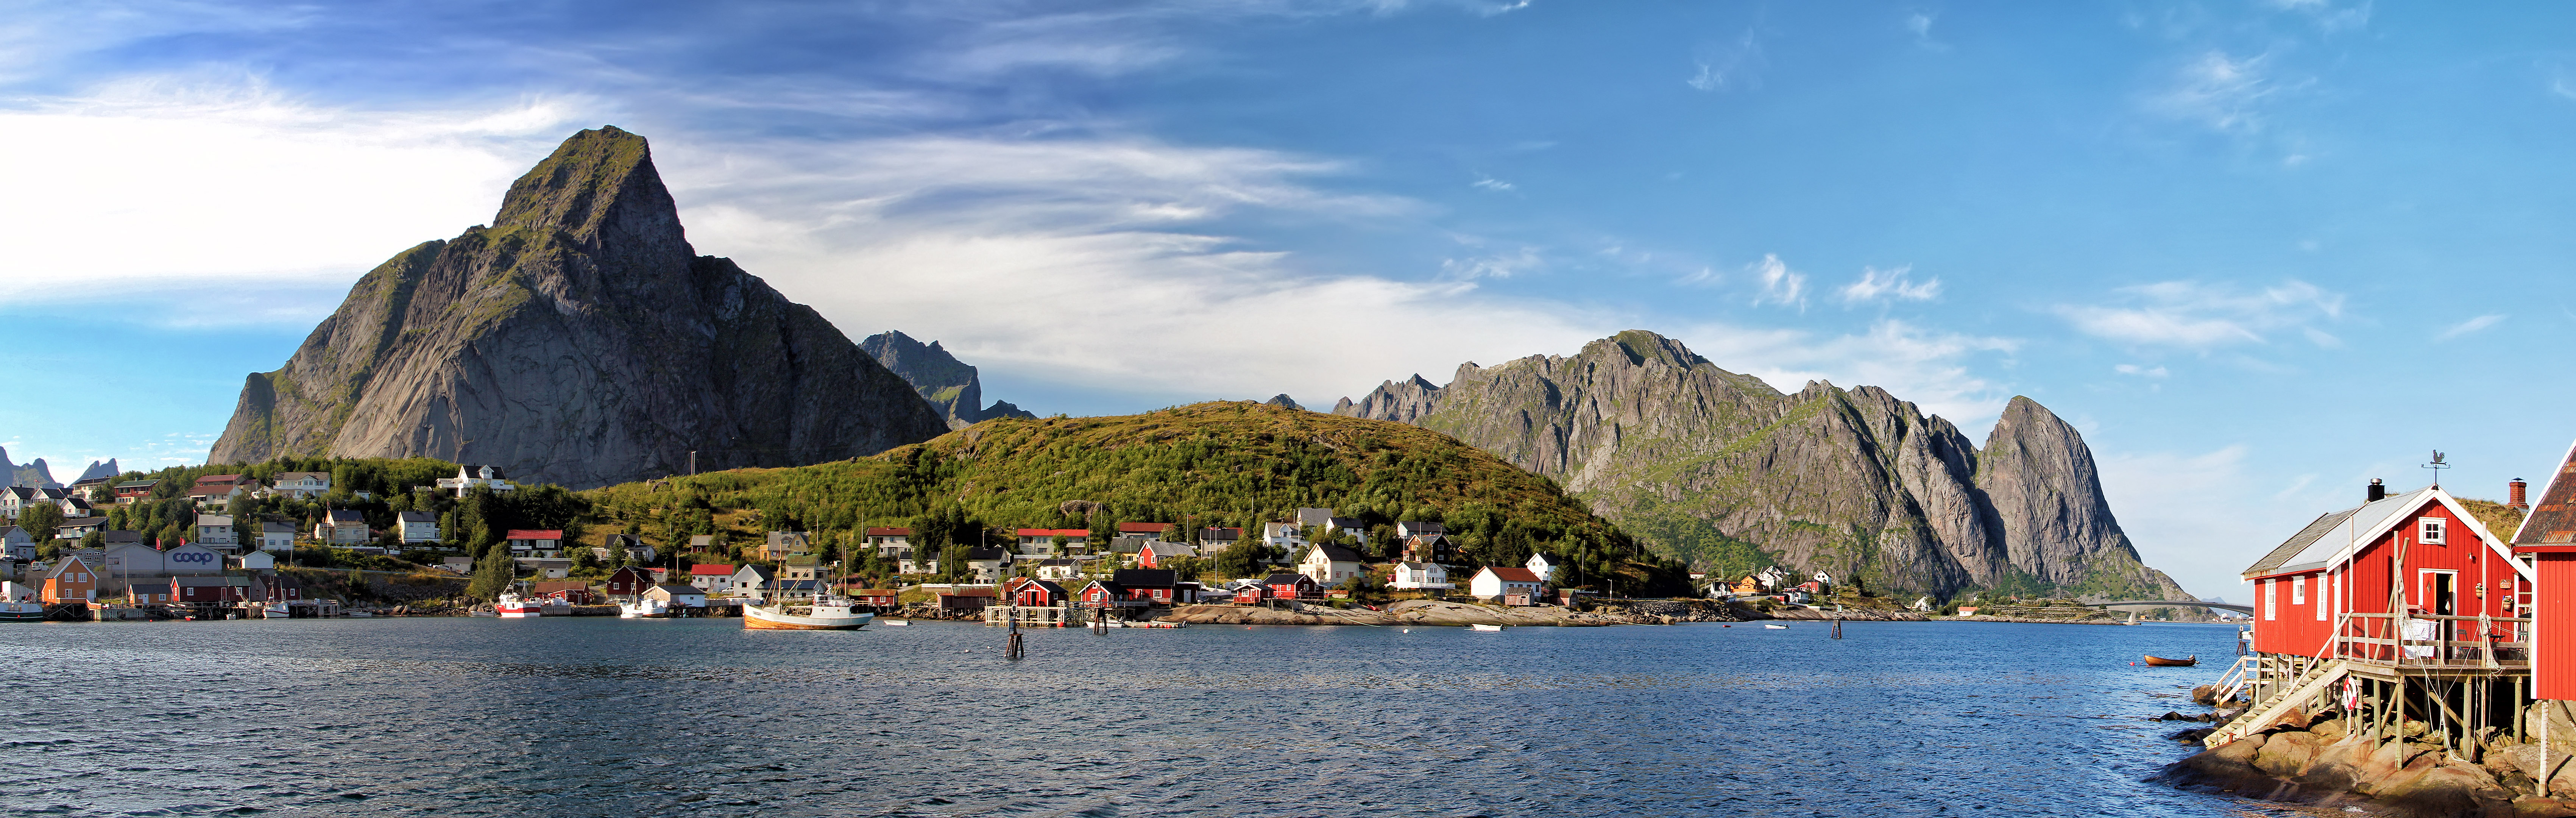 Фото бесплатно дома норвежского типа, Норвегия, горы